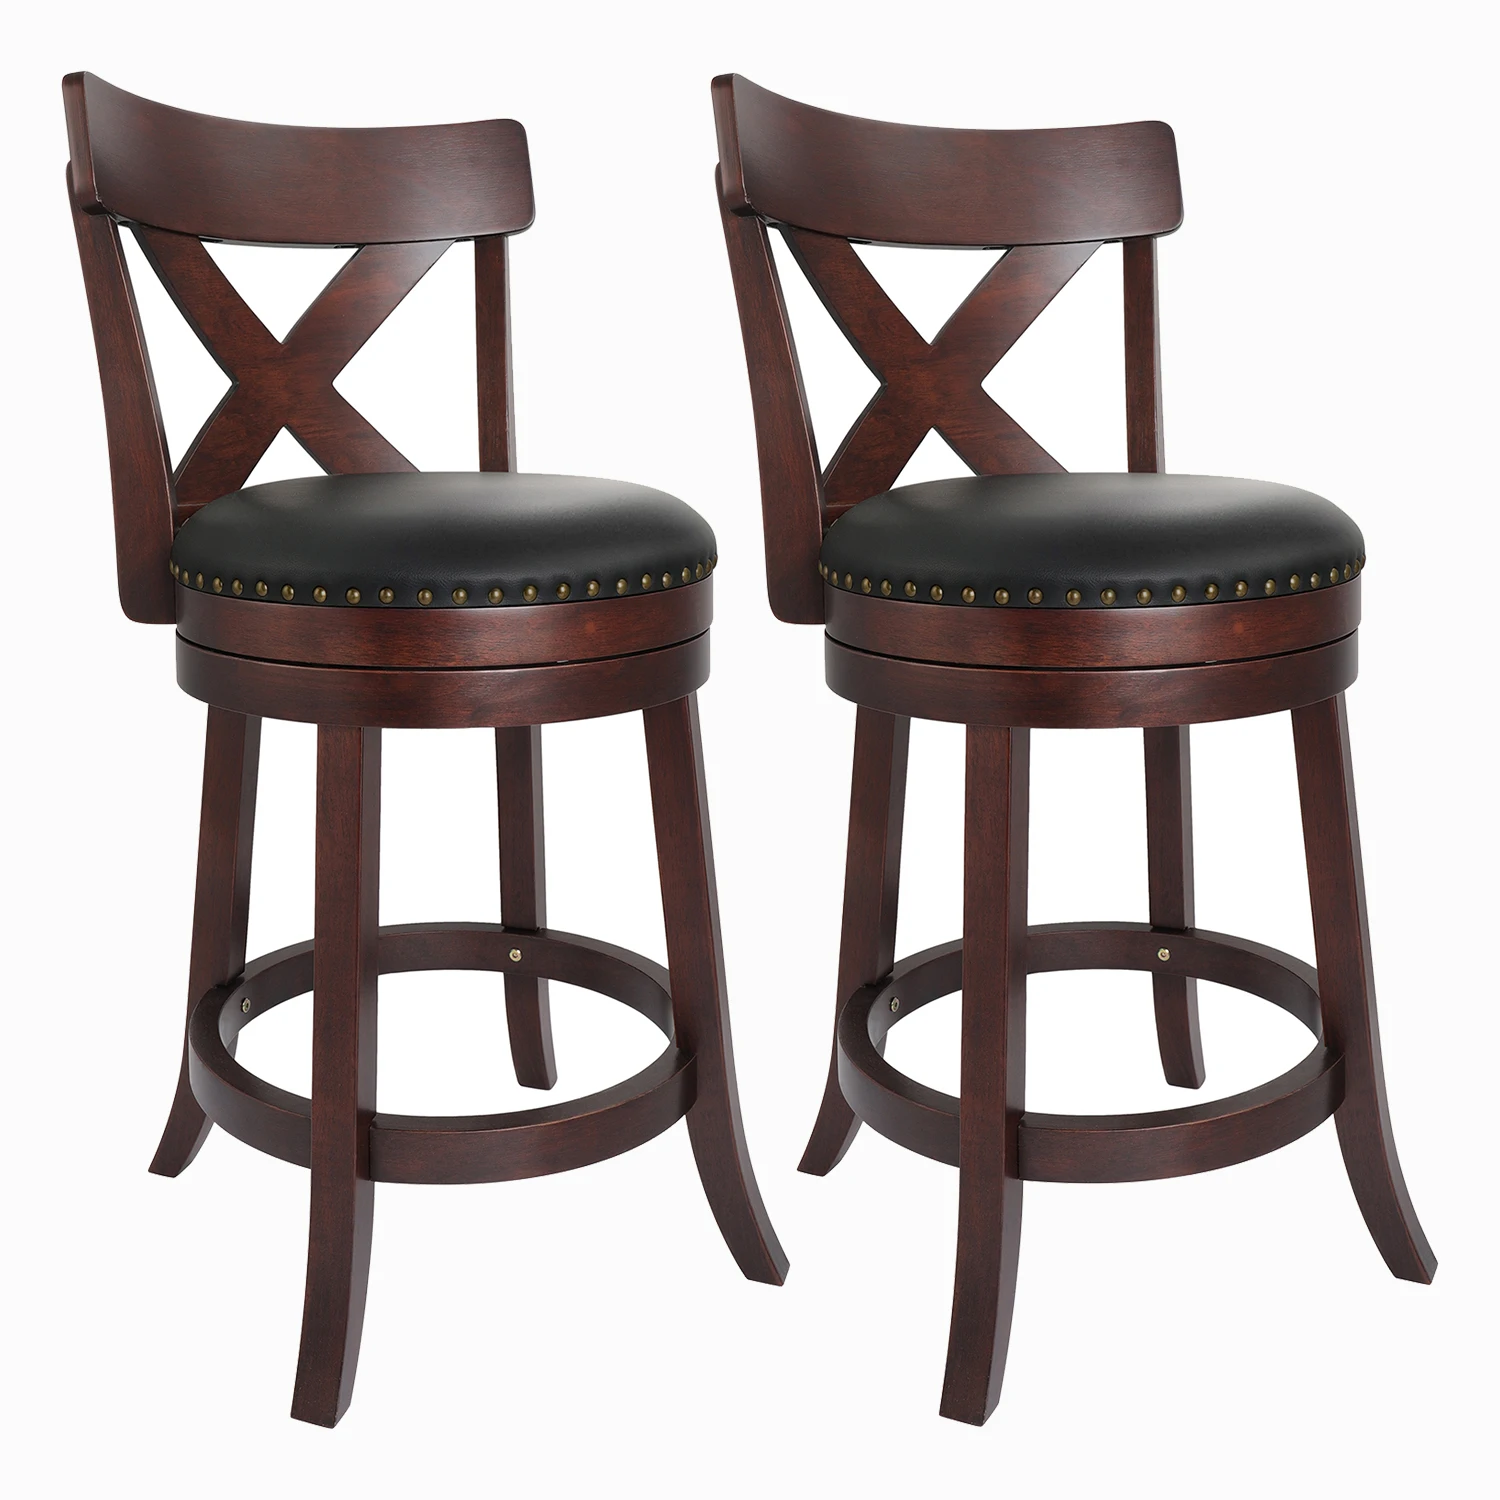 

Деревянные барные стулья в стиле ретро, вращающийся стул из мягкой кожи, для бара, столовой, кухни, с перекрестной спинкой